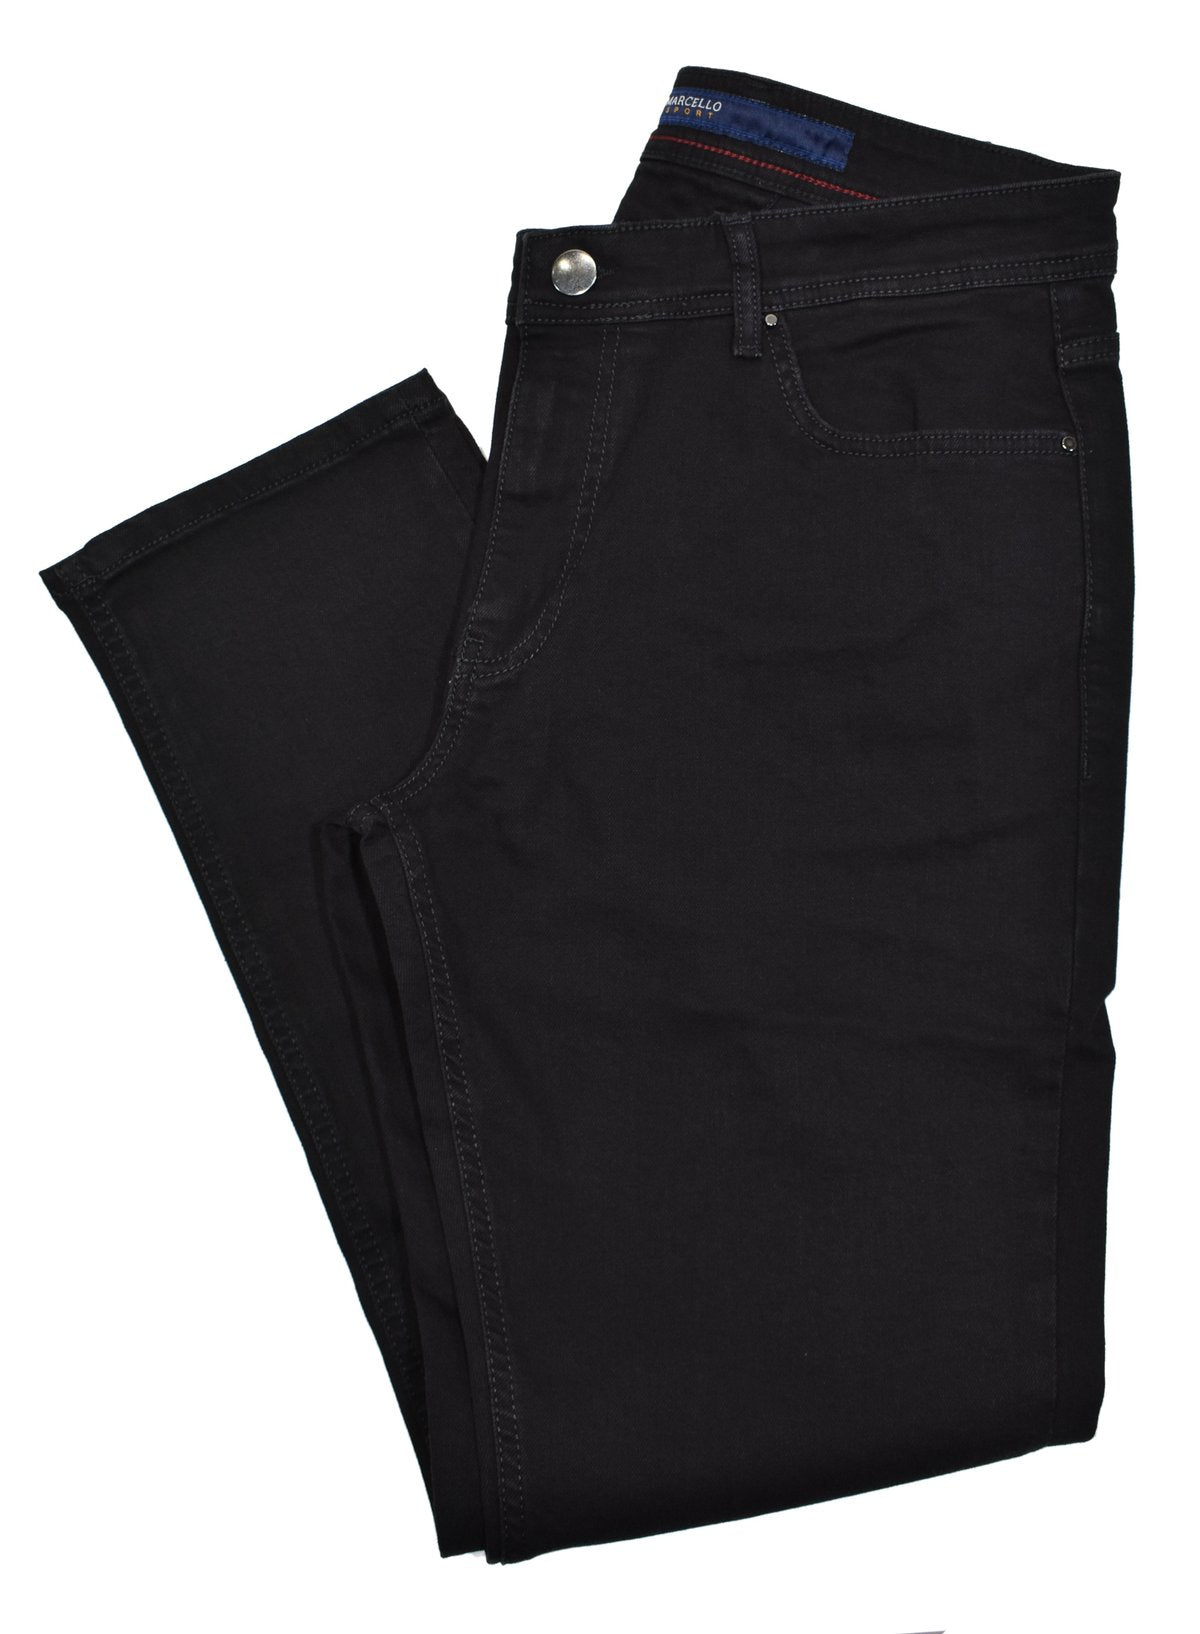 Denim cargo trousers - Light denim blue - Ladies | H&M US